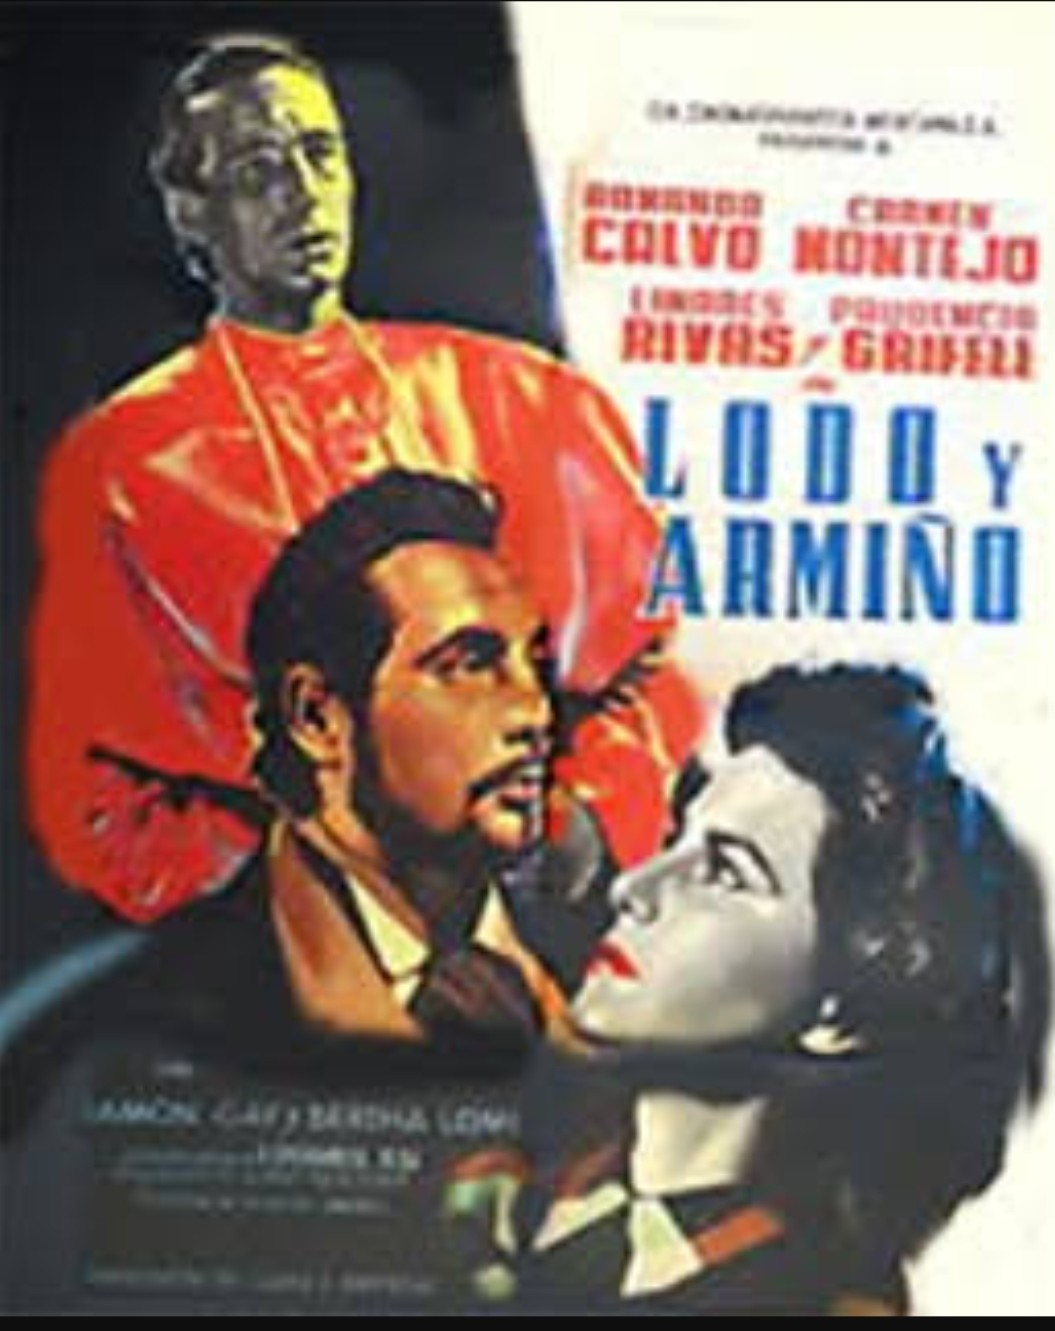 Lodo y armiño (1951) постер